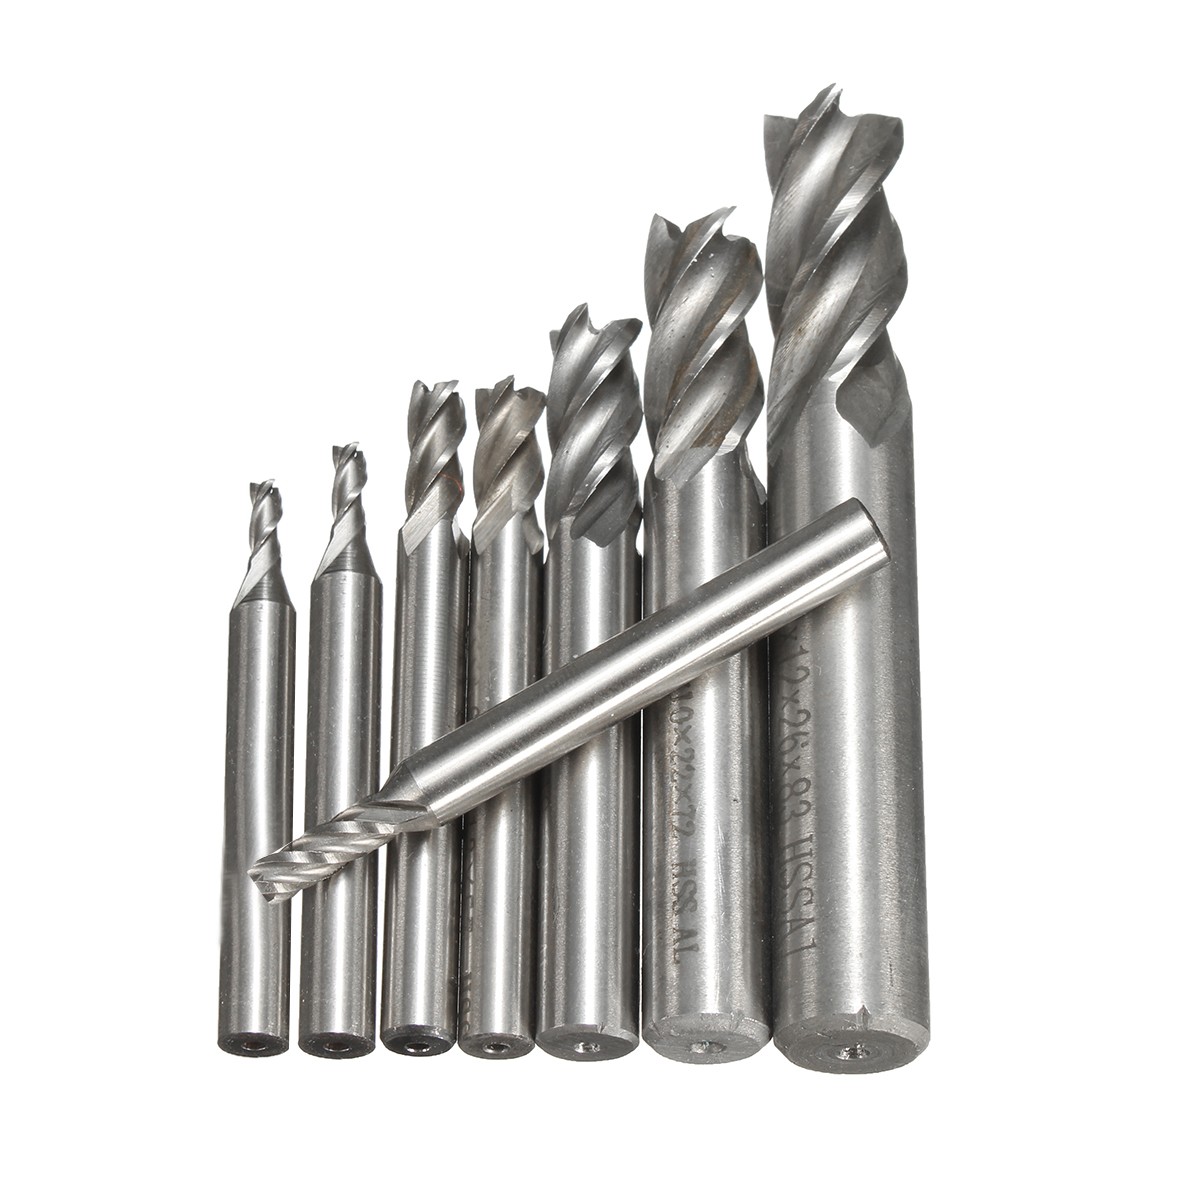 2-12mm-HSS-4-Flute-End-Mill-Cutter-Straight-Shank-Milling-Cutter-Drill-Bit-CNC-Tool-1116645-2